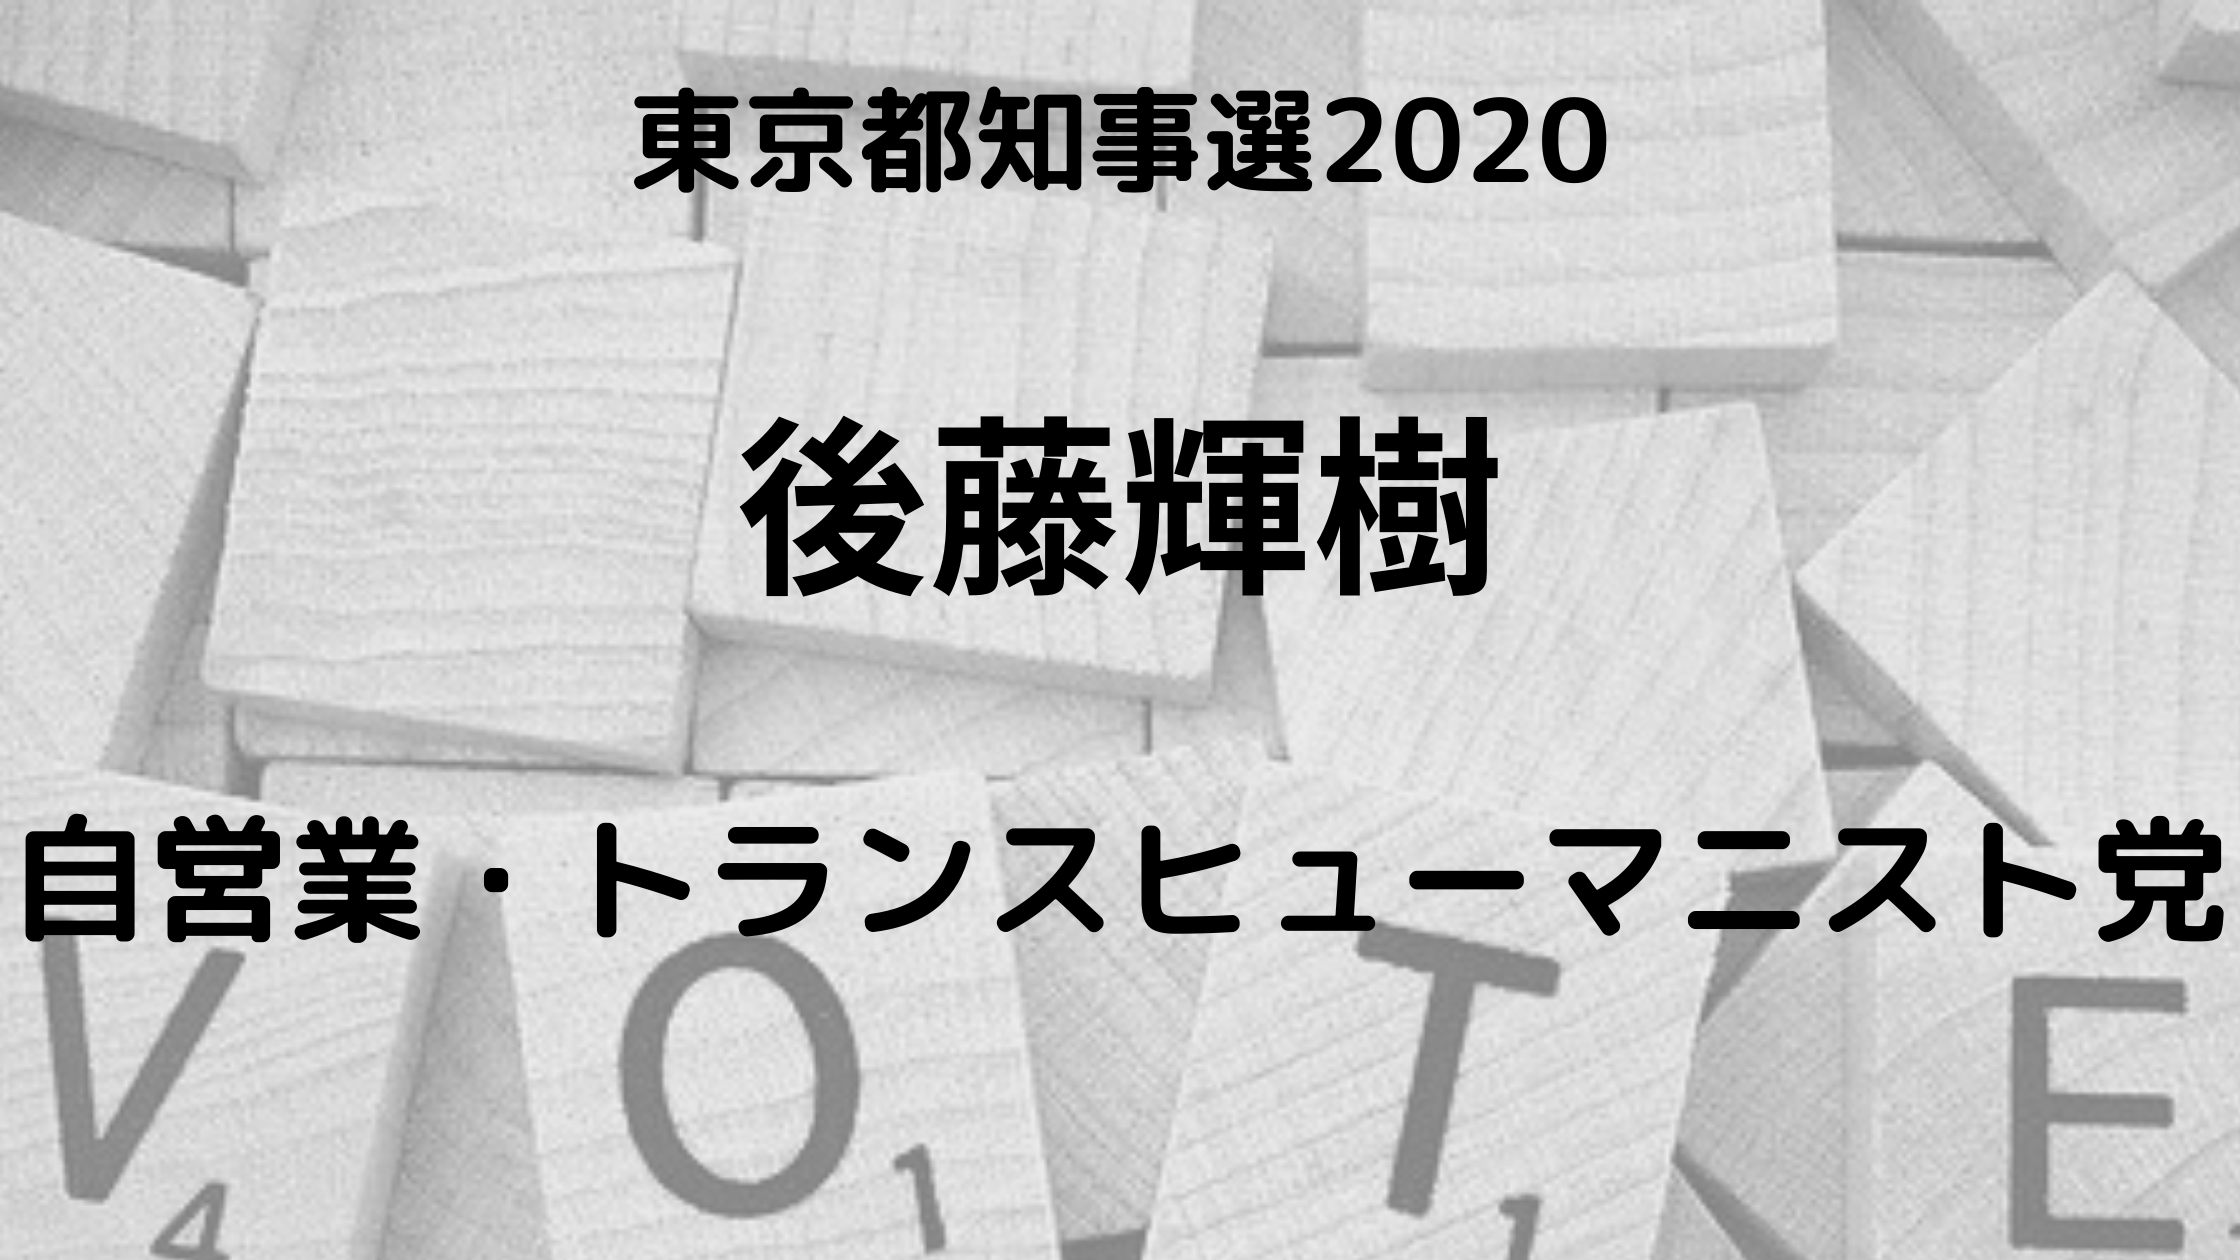 後藤輝樹 東京都知事選挙2020 は何者 職業や学歴は 結婚はしている